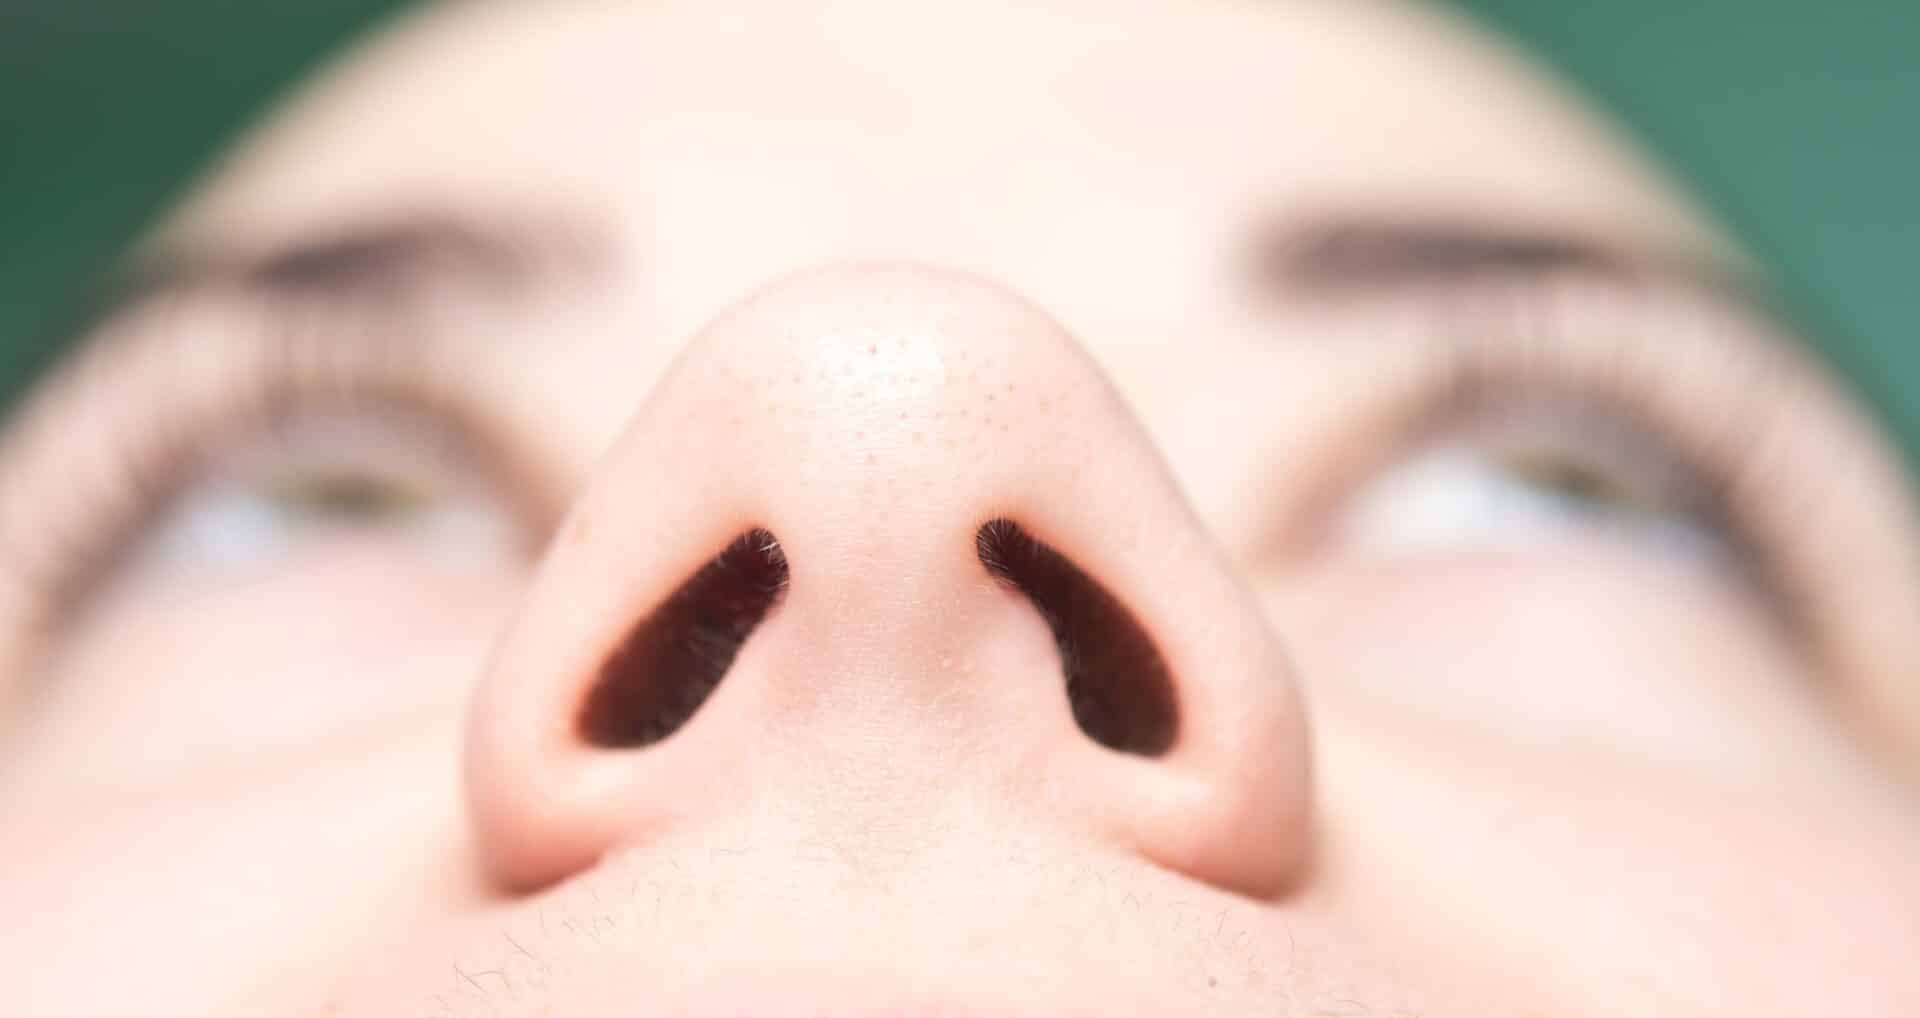 Narinas - para que servem e como influenciam o funcionamento do nariz